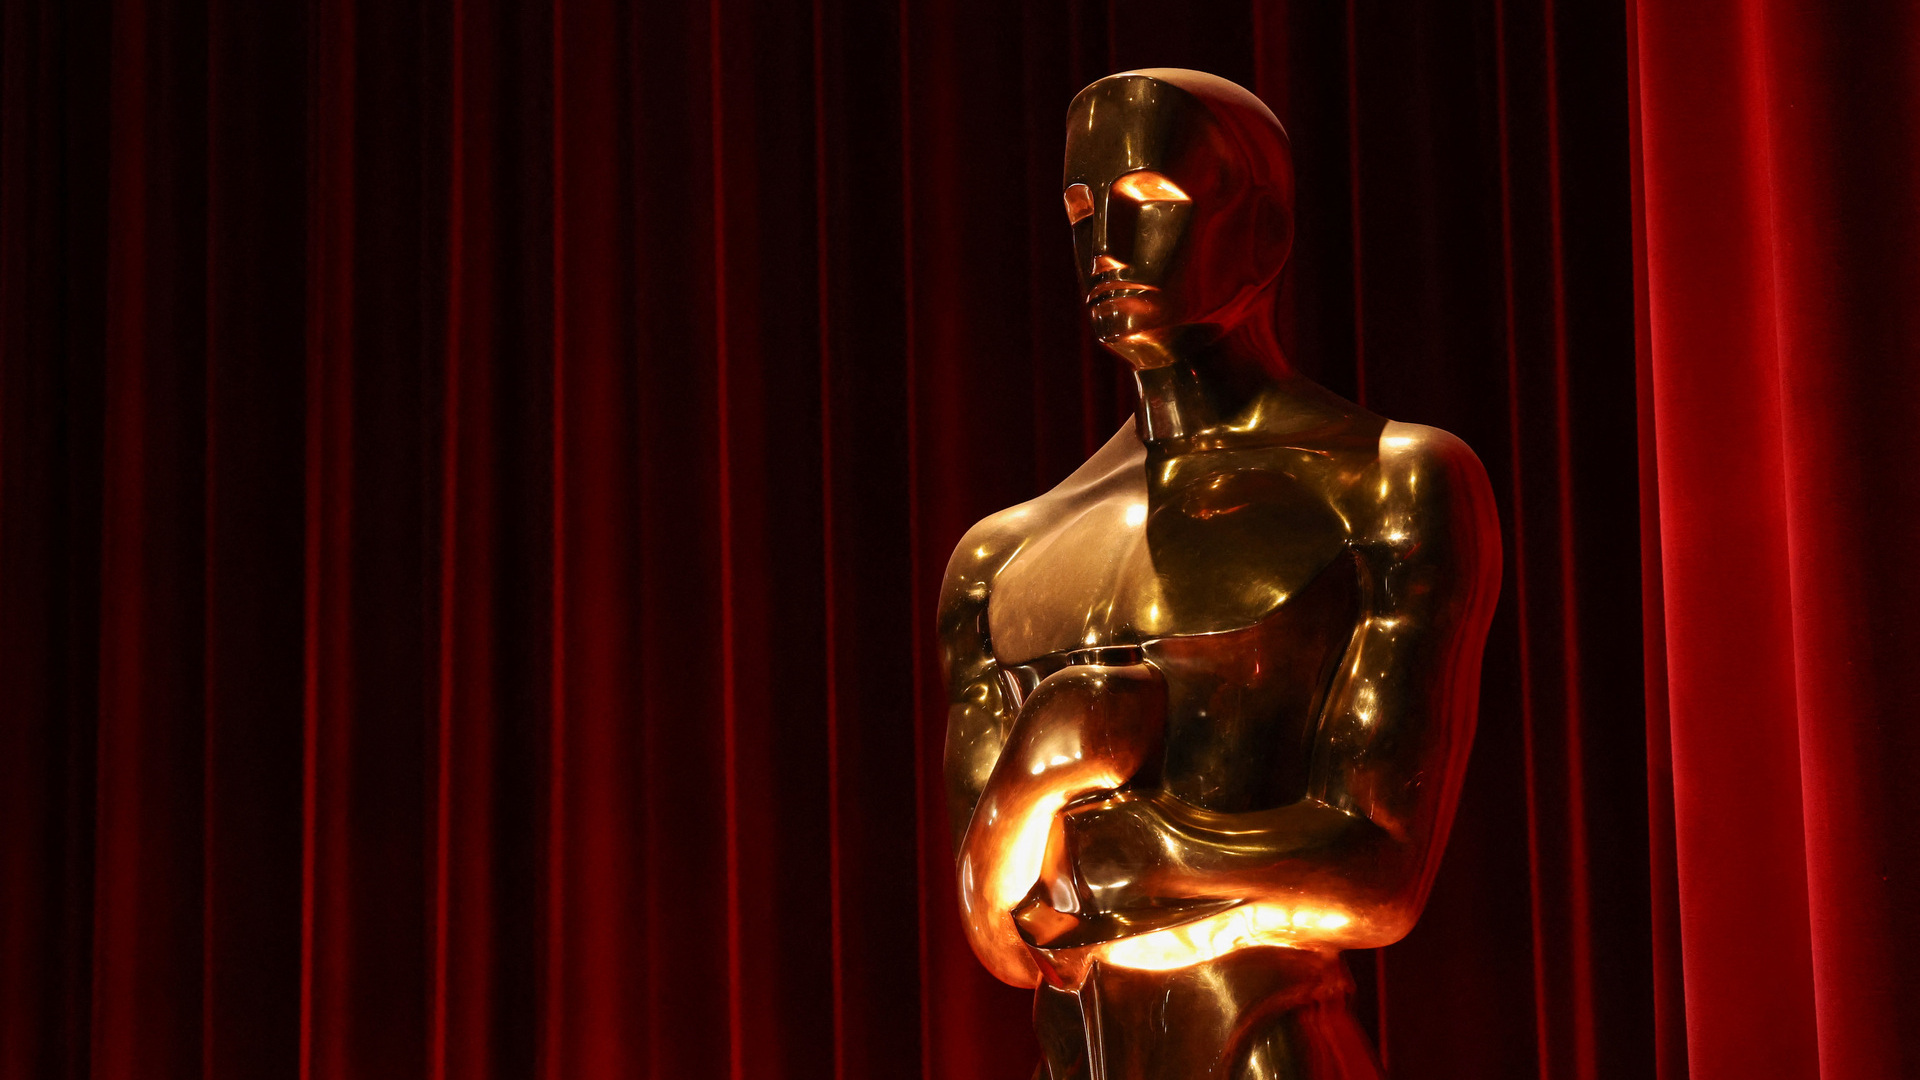 La 96° edición de los Premios Oscar no será la más latinoamericana de la historia. Aun así, un puñado de nombres en español desfila en las listas de categorías protagónicas. Es la brecha que se ha cerrado en los últimos años; sobre todo, tras los éxitos del trío Iñárritu-Cuarón-Del Toro.